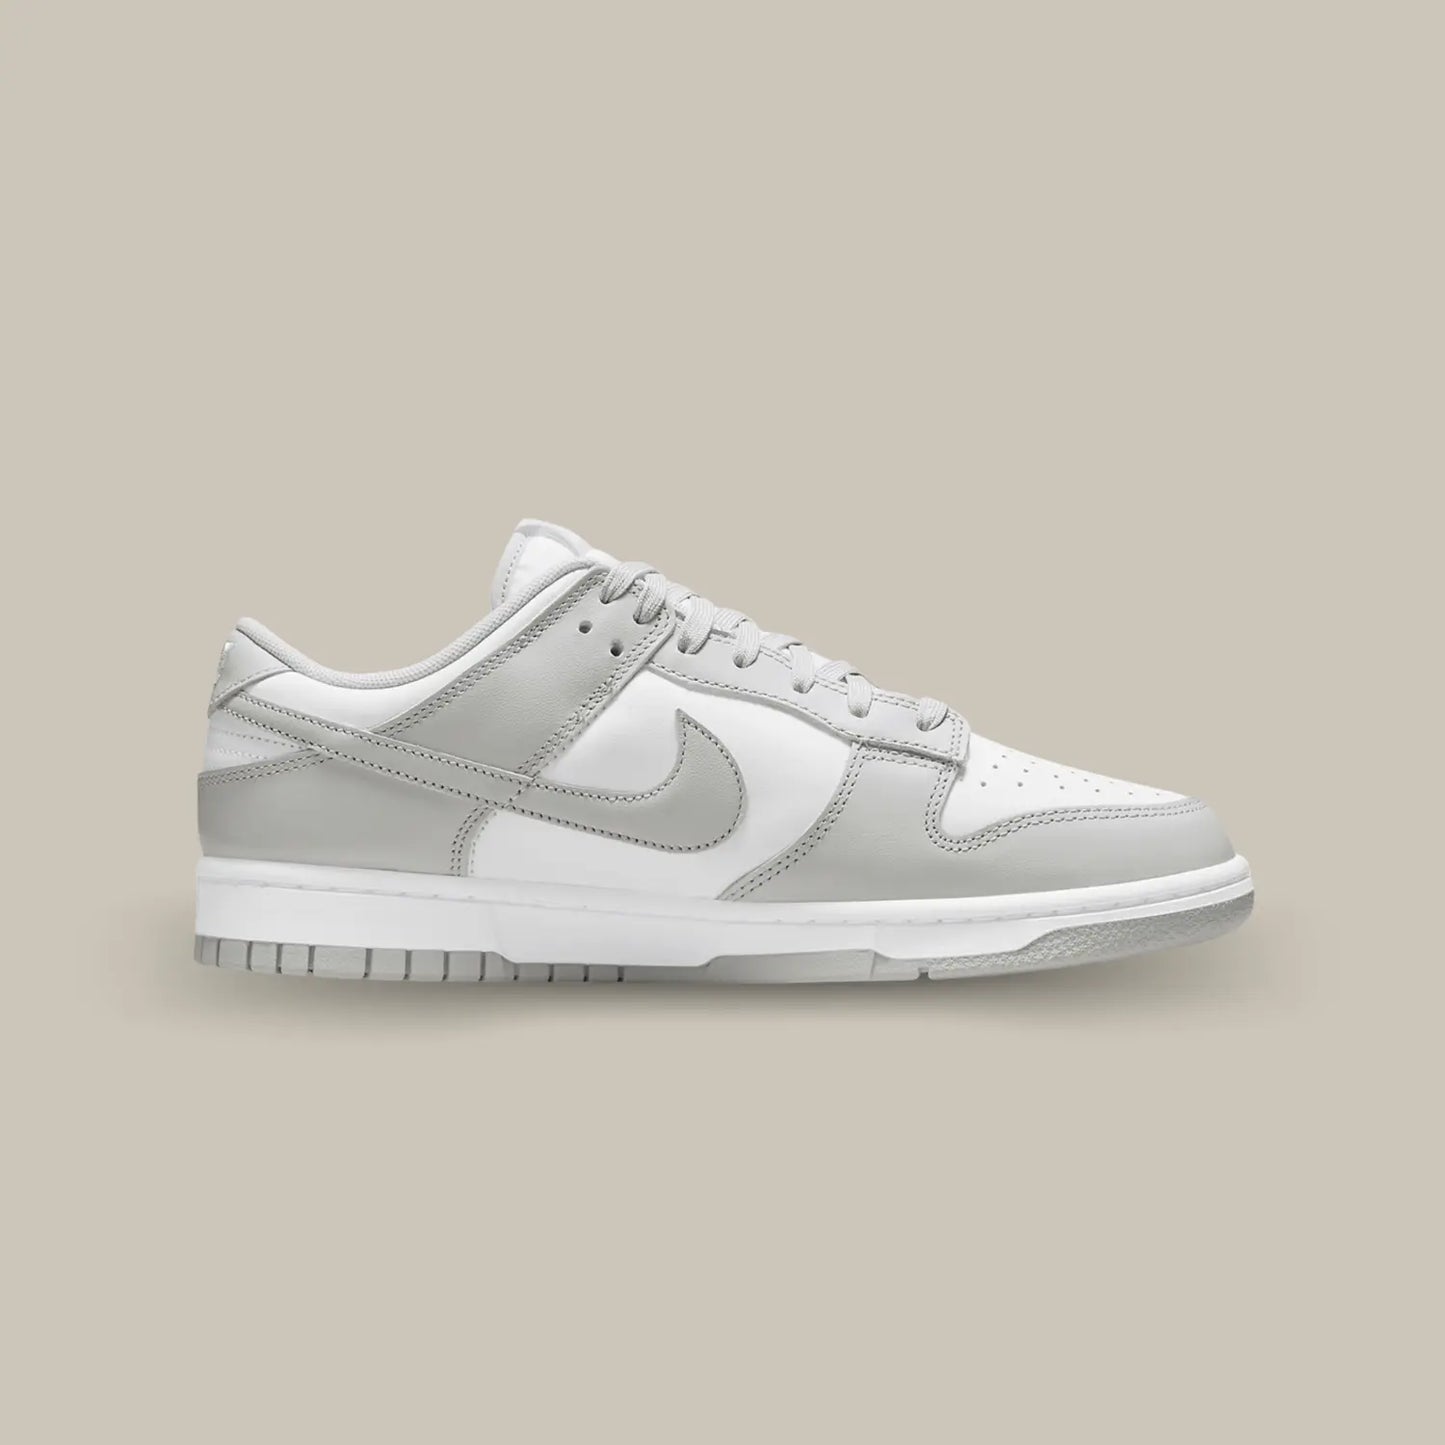 La Nike Dunk Low Grey Fog de coté avec son empeigne en cuir blanc, relevée d’empiècements en cuir gris clair.